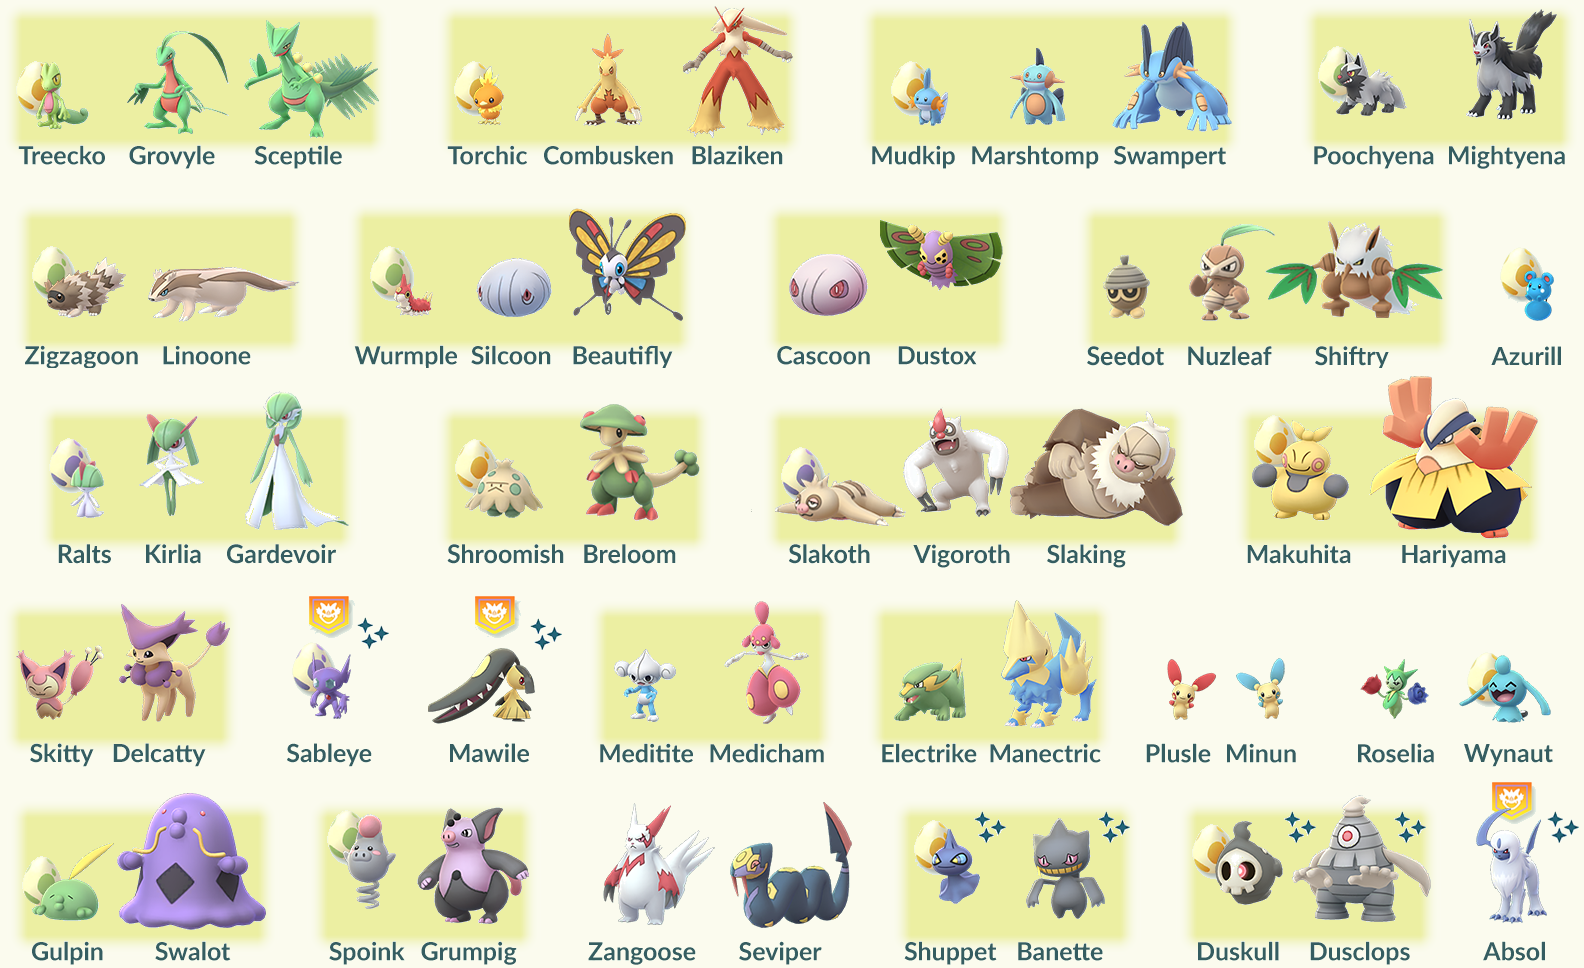 Pokemon GO – Lista dos Pokemon da Geração 3 com CP mais altos – O Andarilho  Pokémon